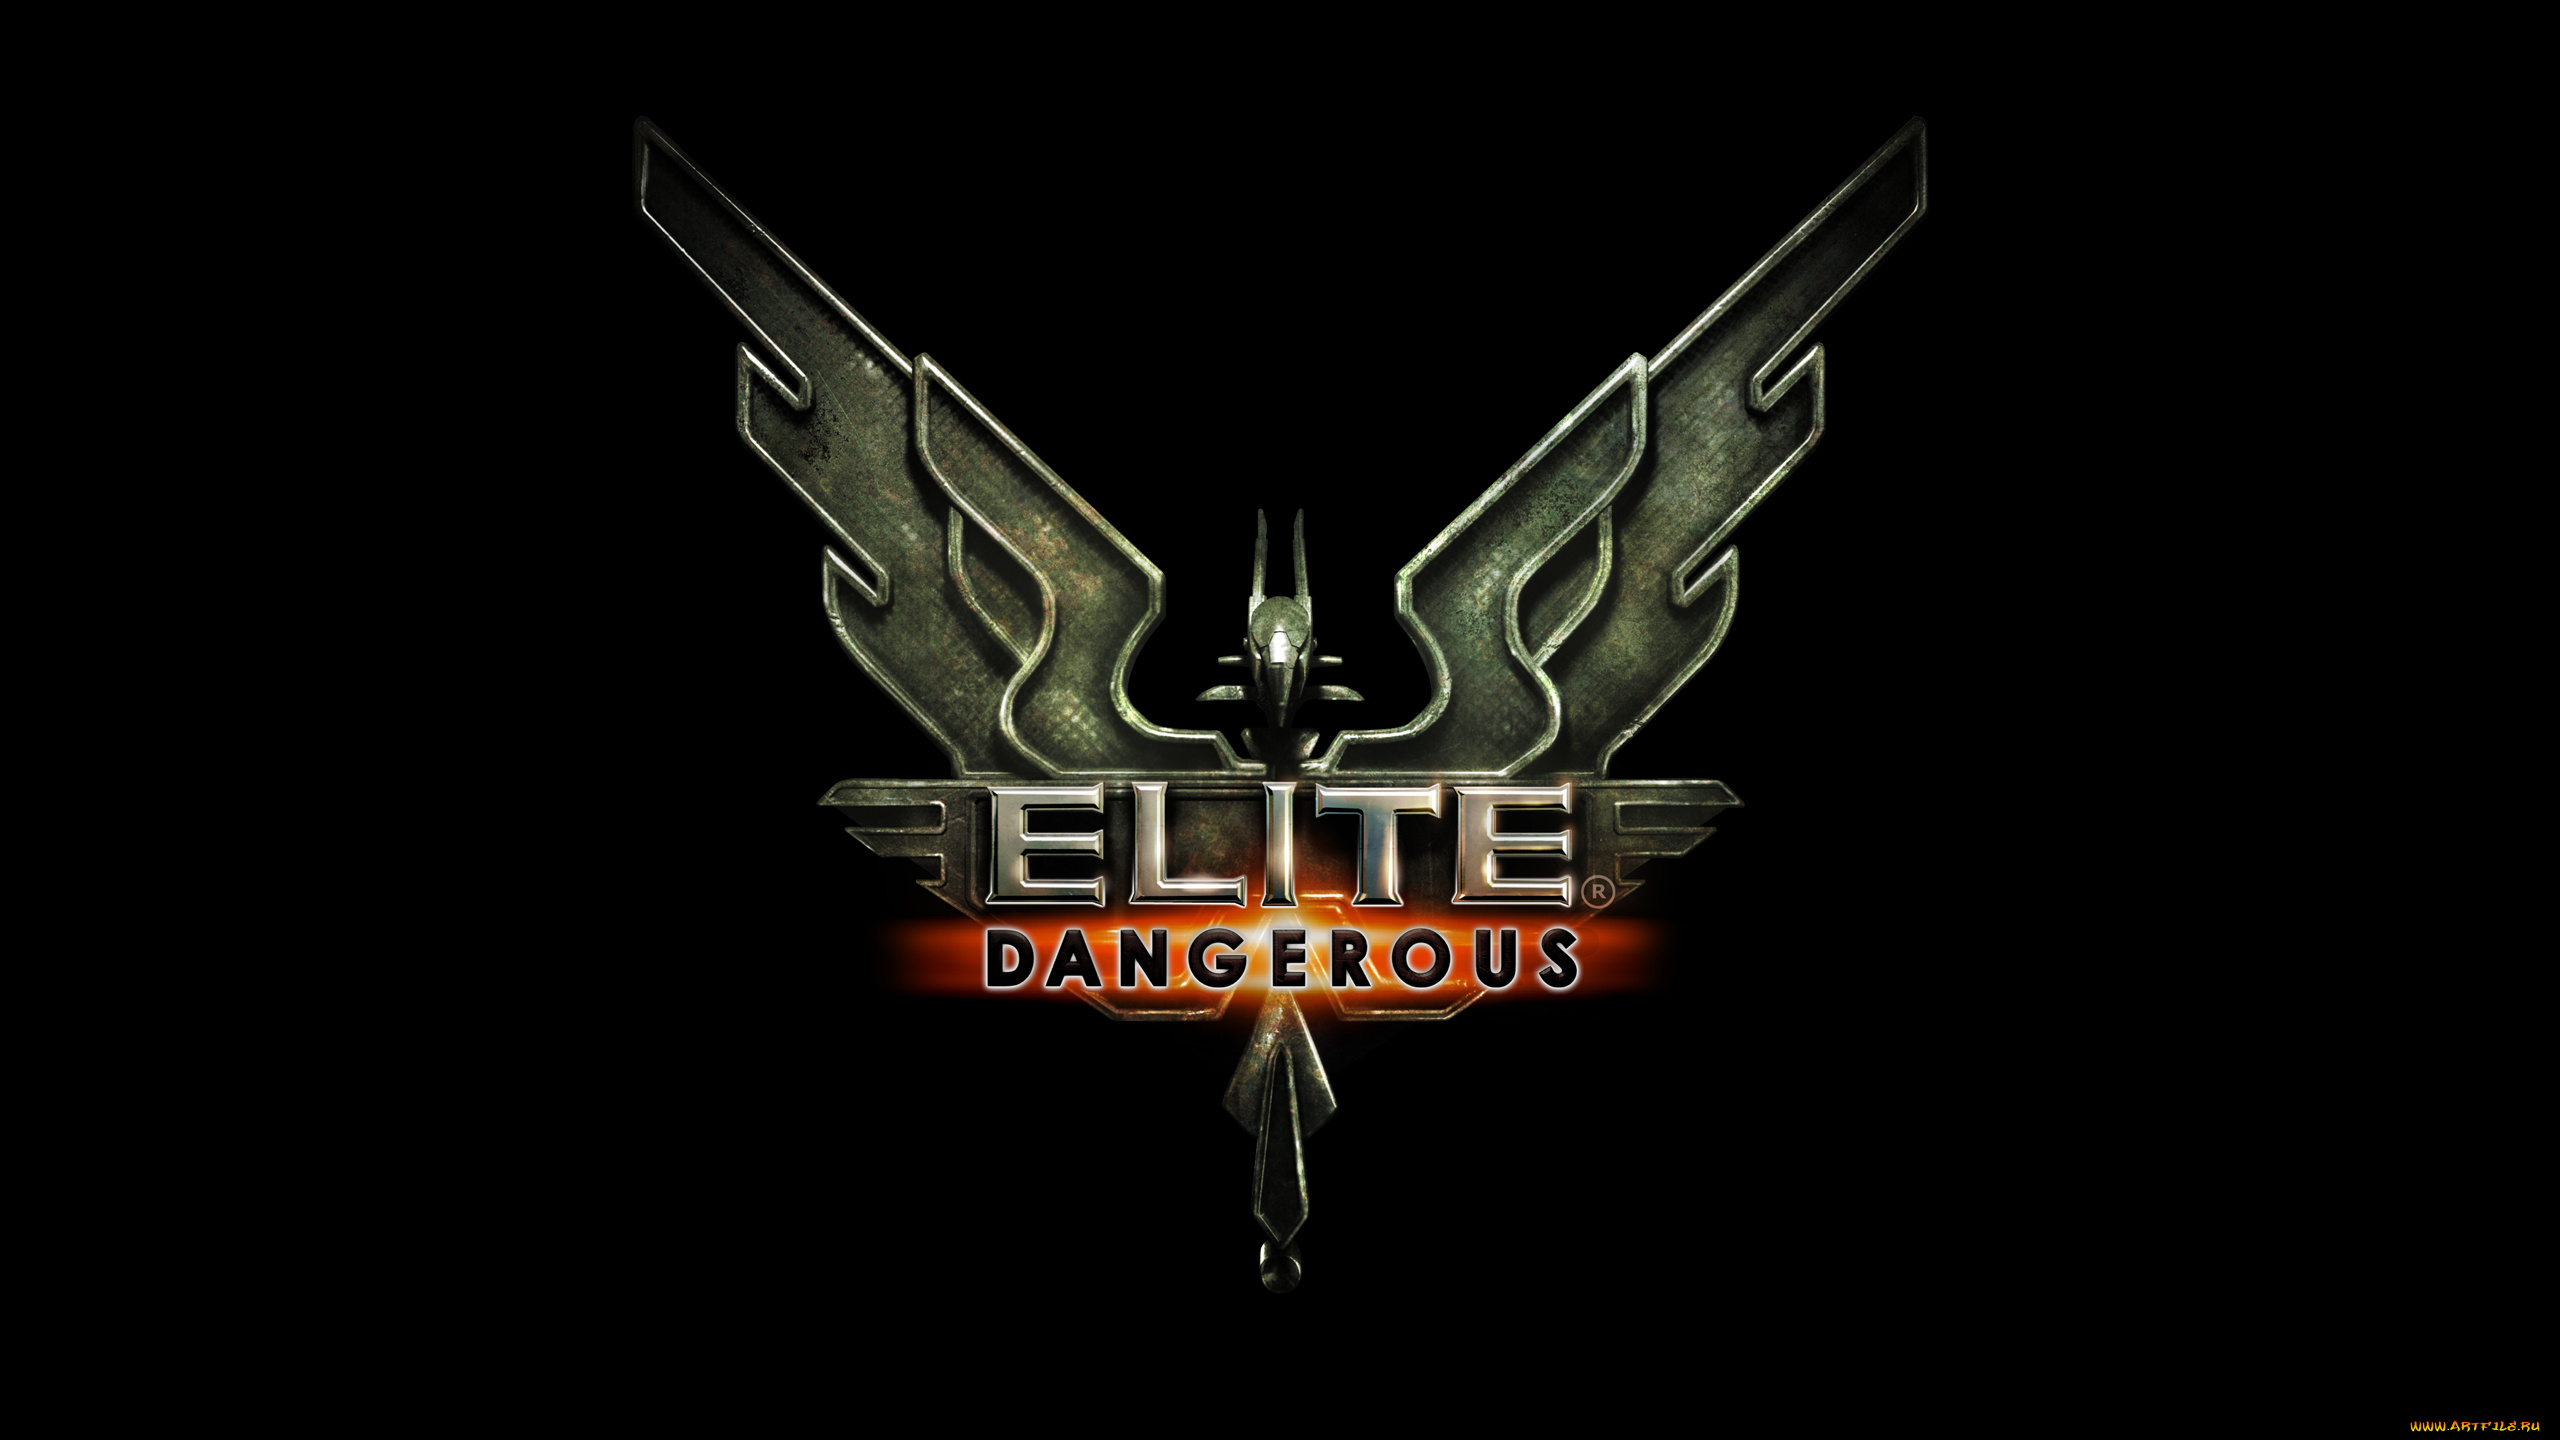 elite, dangerous, видео, игры, -, elite, , dangerous, ролевая, dangerous, elite, симулятор, космос, игра